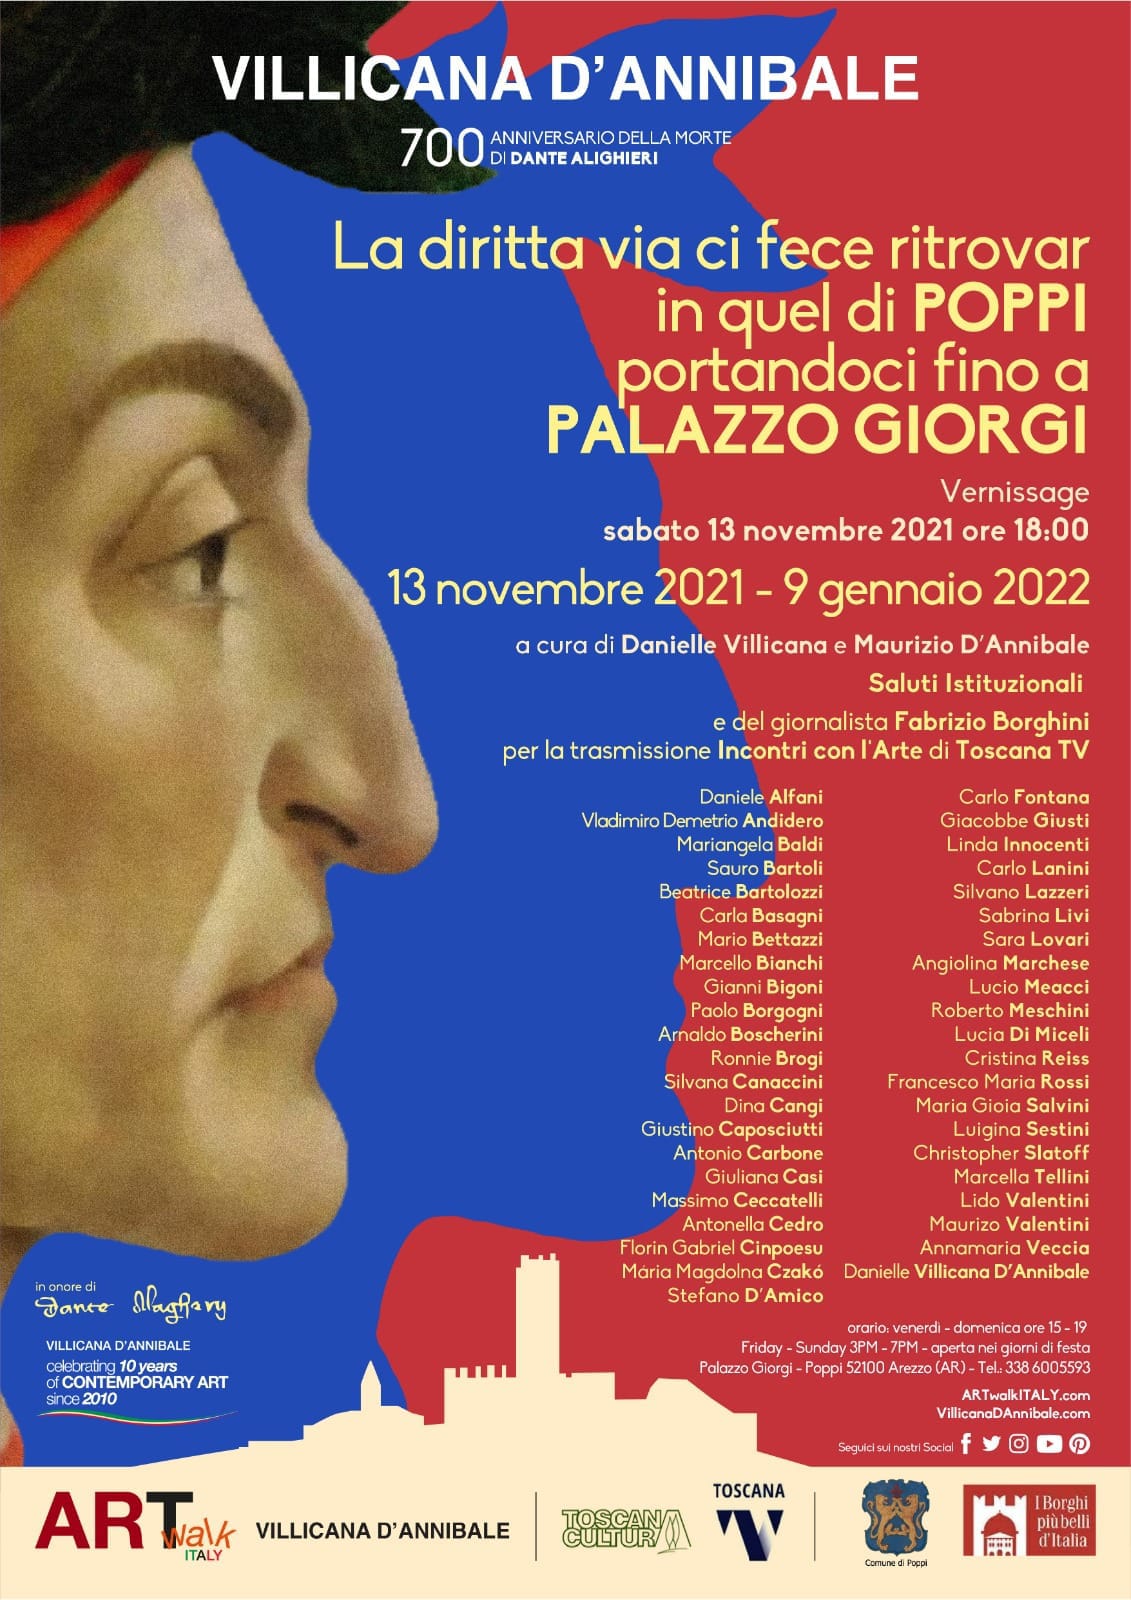 Poppi: a Palazzo Giorgi 45 artisti espongono in onore di Dante